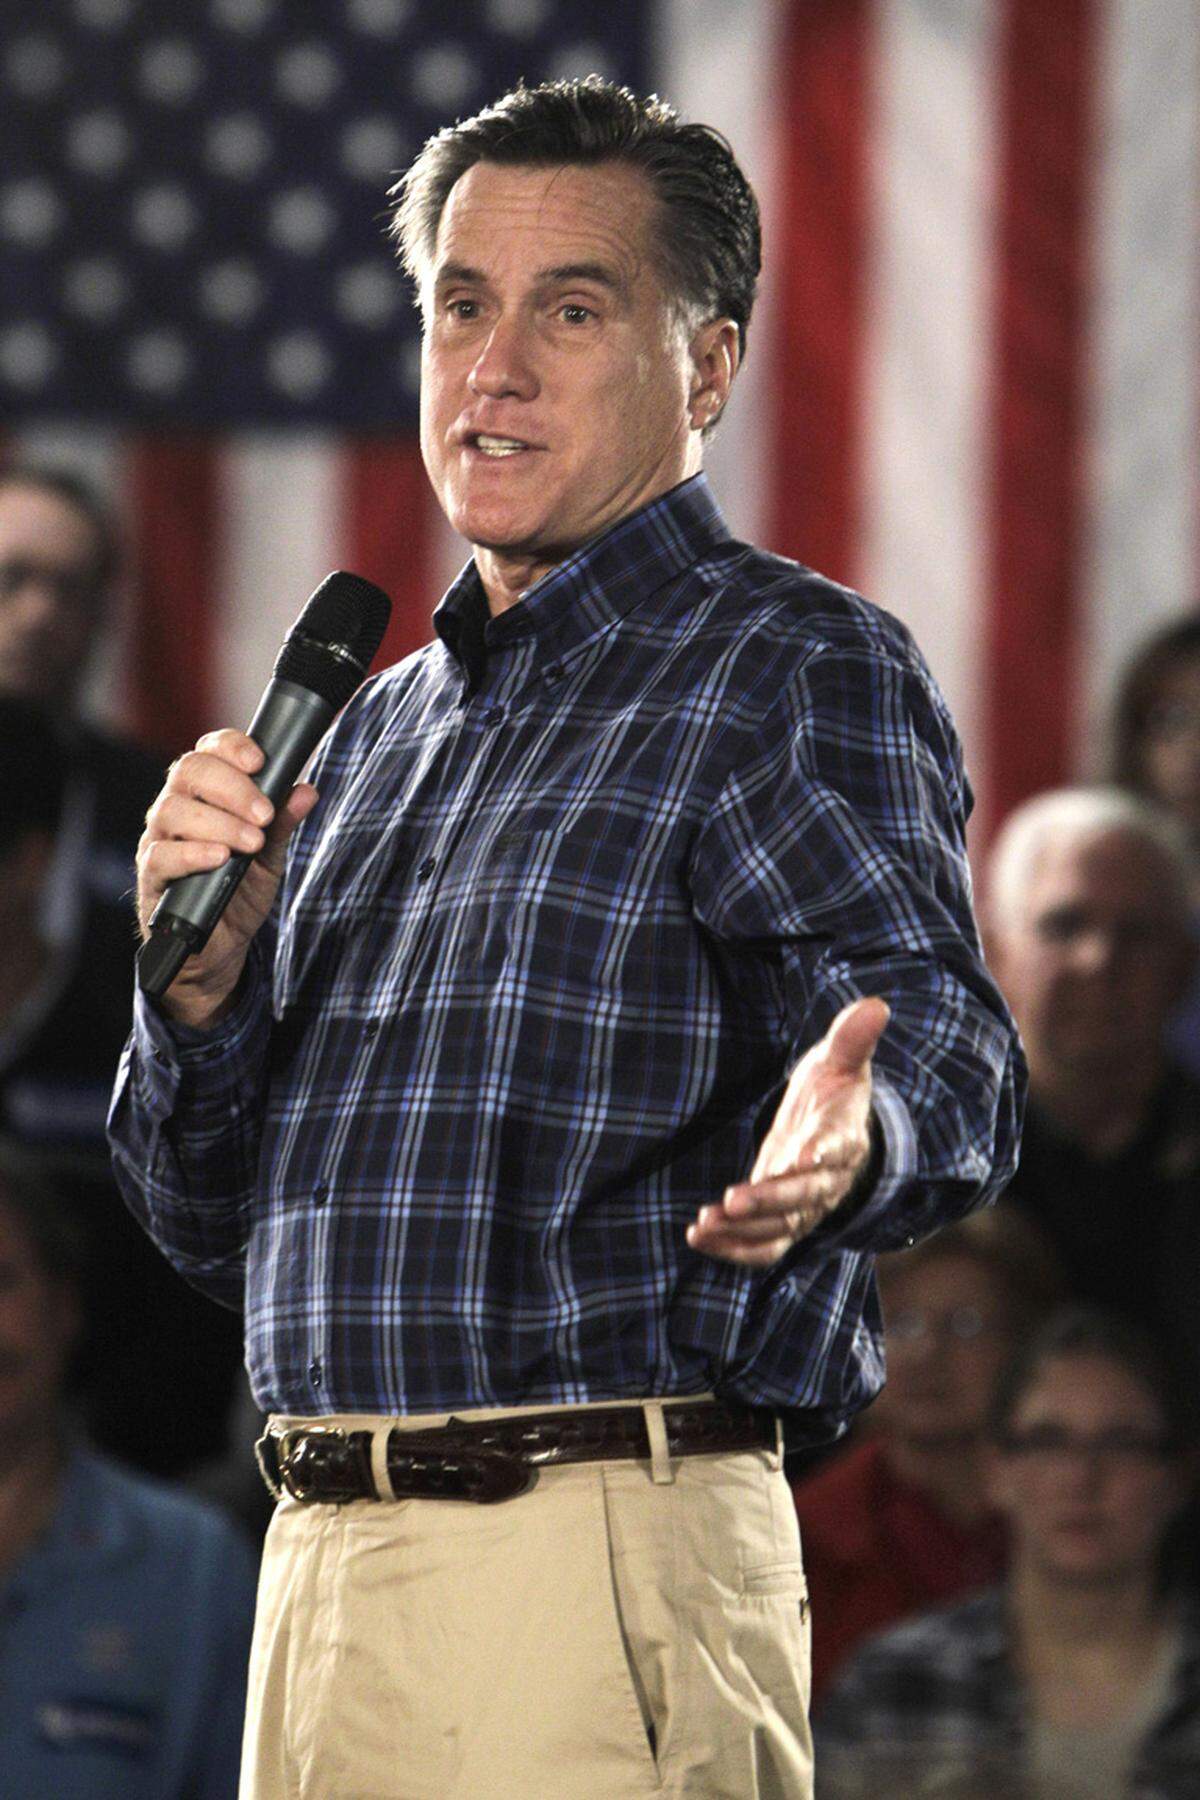 Der 64-jährige Mormone Mitt Romney gilt als Favorit im Vorwahlkampf. In New Hampshire hat Romney die Vorwahlen gewonnen. Zum Start in Iowa war er zunächst auch zum Wahlsieger erklärt worden, nach einer Neuauszählung landete er aber "nur" auf Platz zwei - mit 34 Stimmen Rückstand. Romney war auch schon 2008 Favorit gewesen - und dann an John McCain gescheitert.